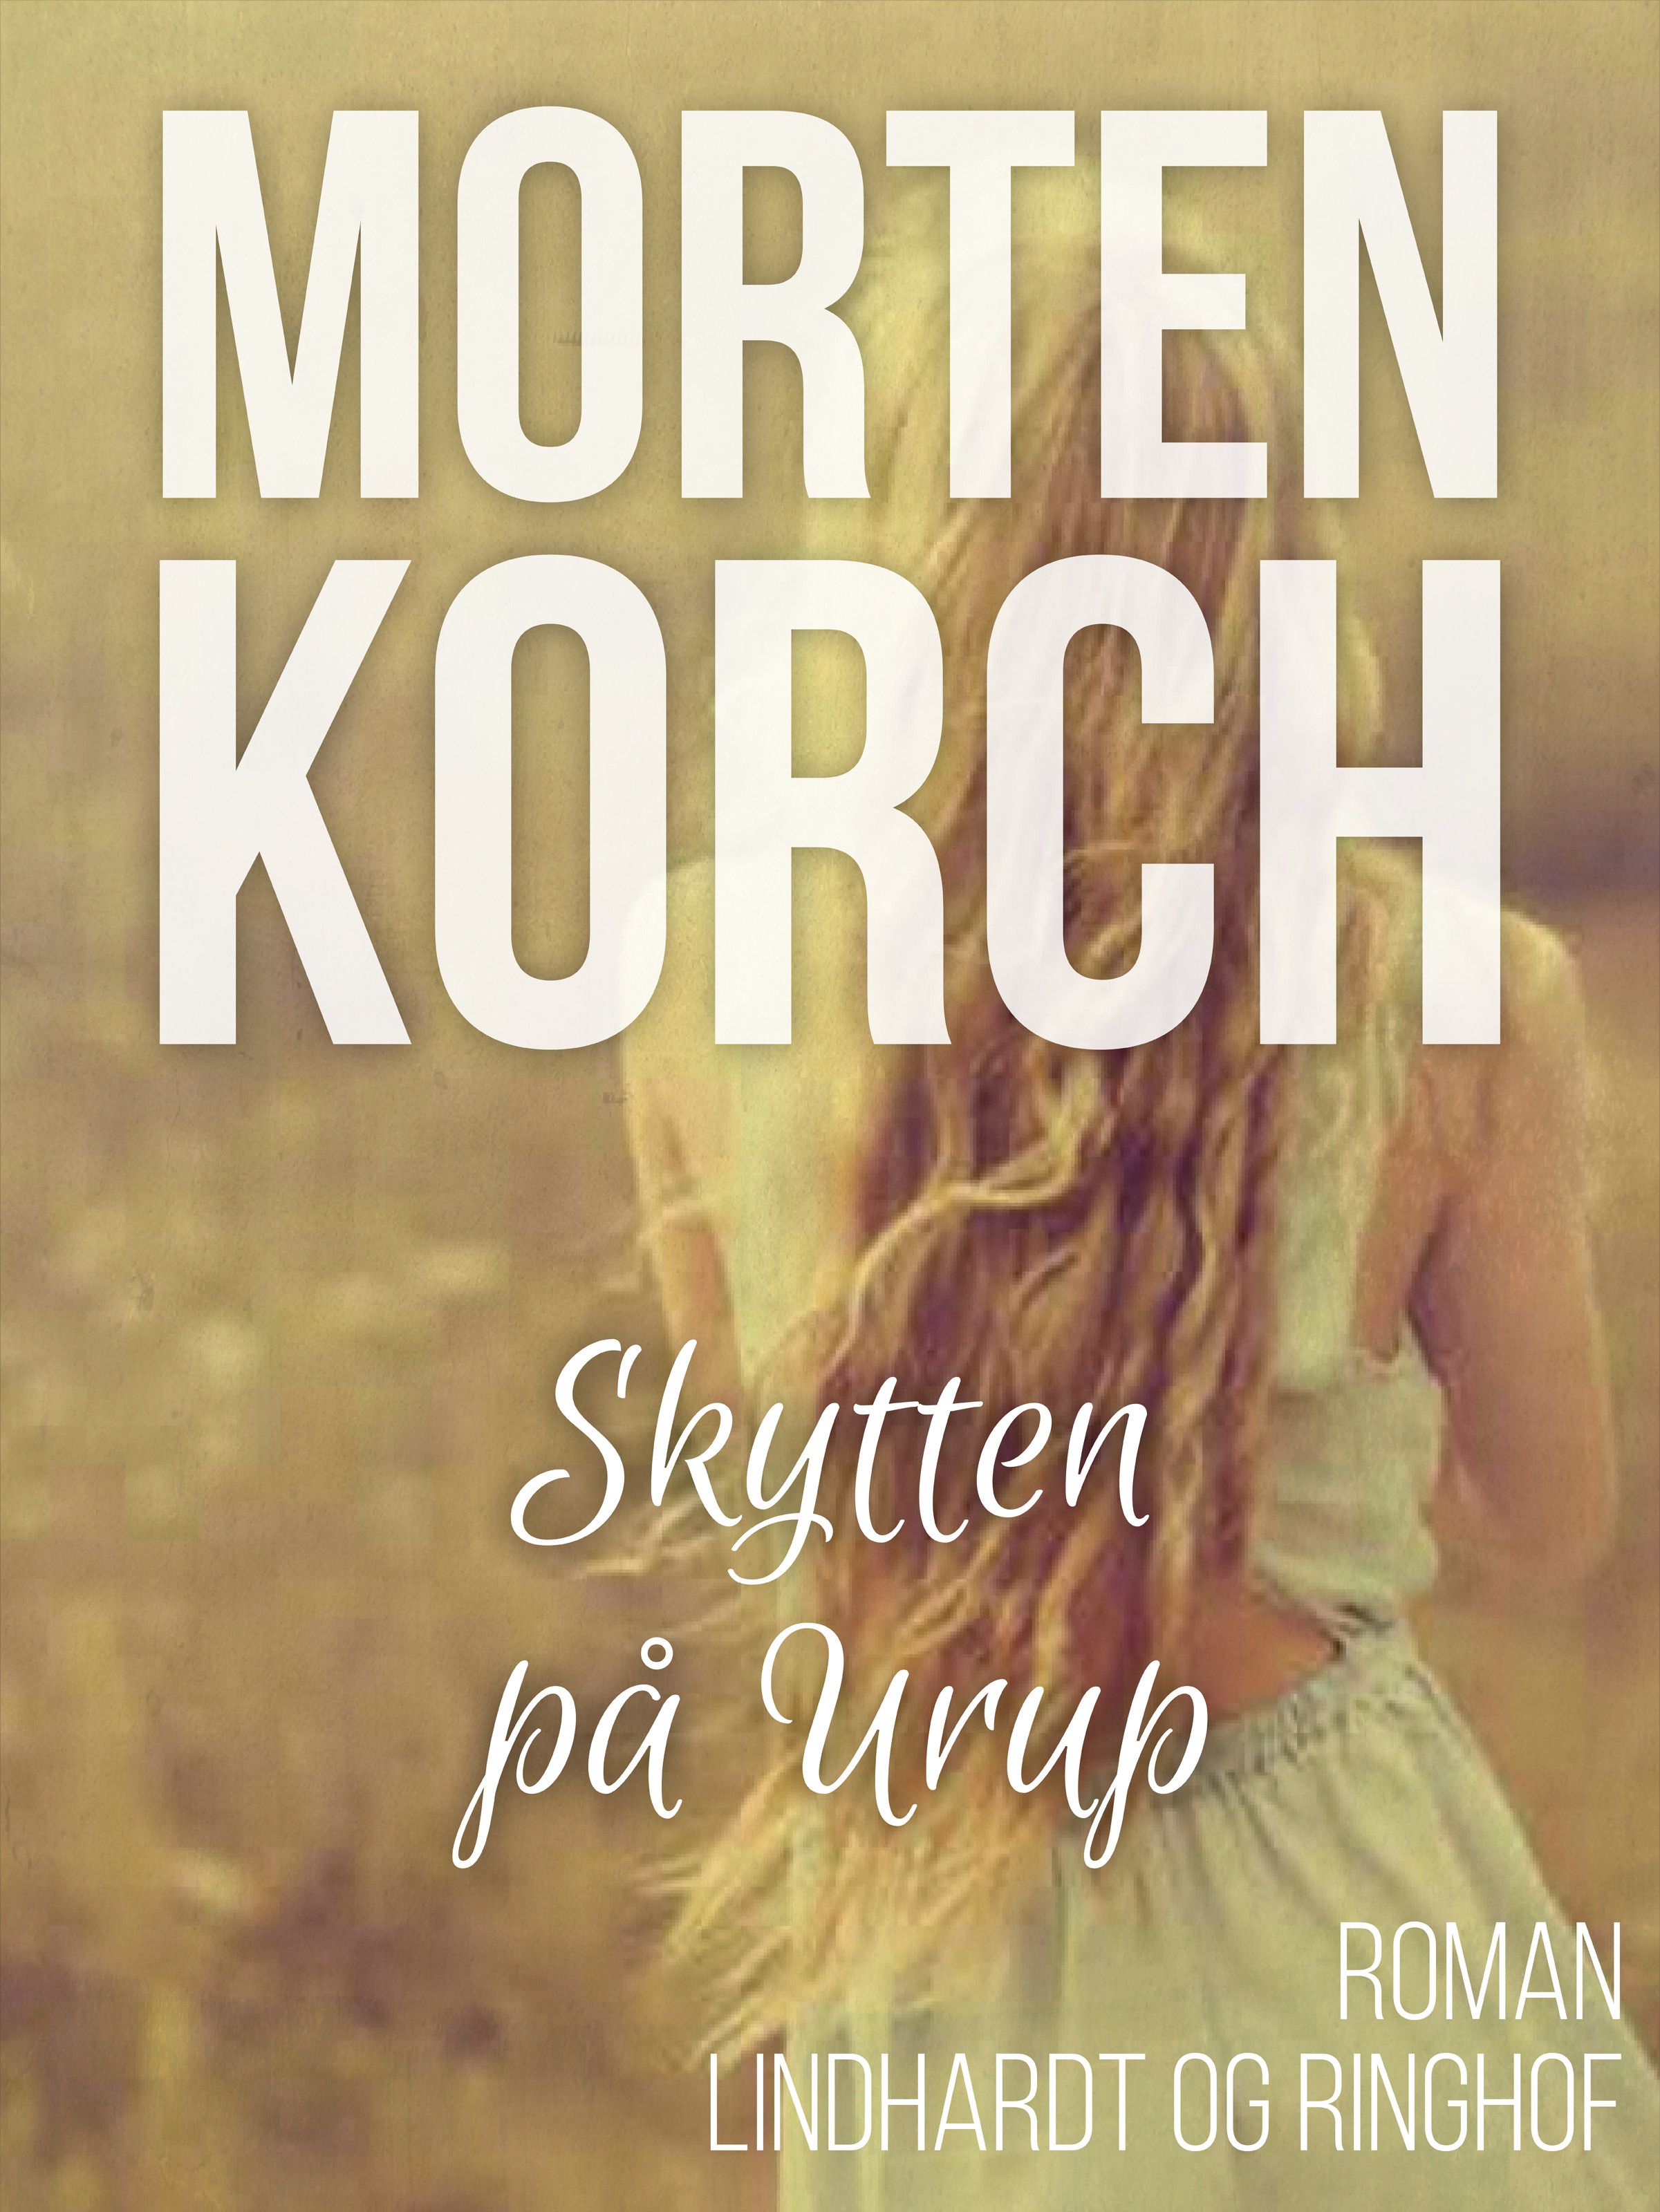 Skytten på Urup, ljudbok av Morten Korch